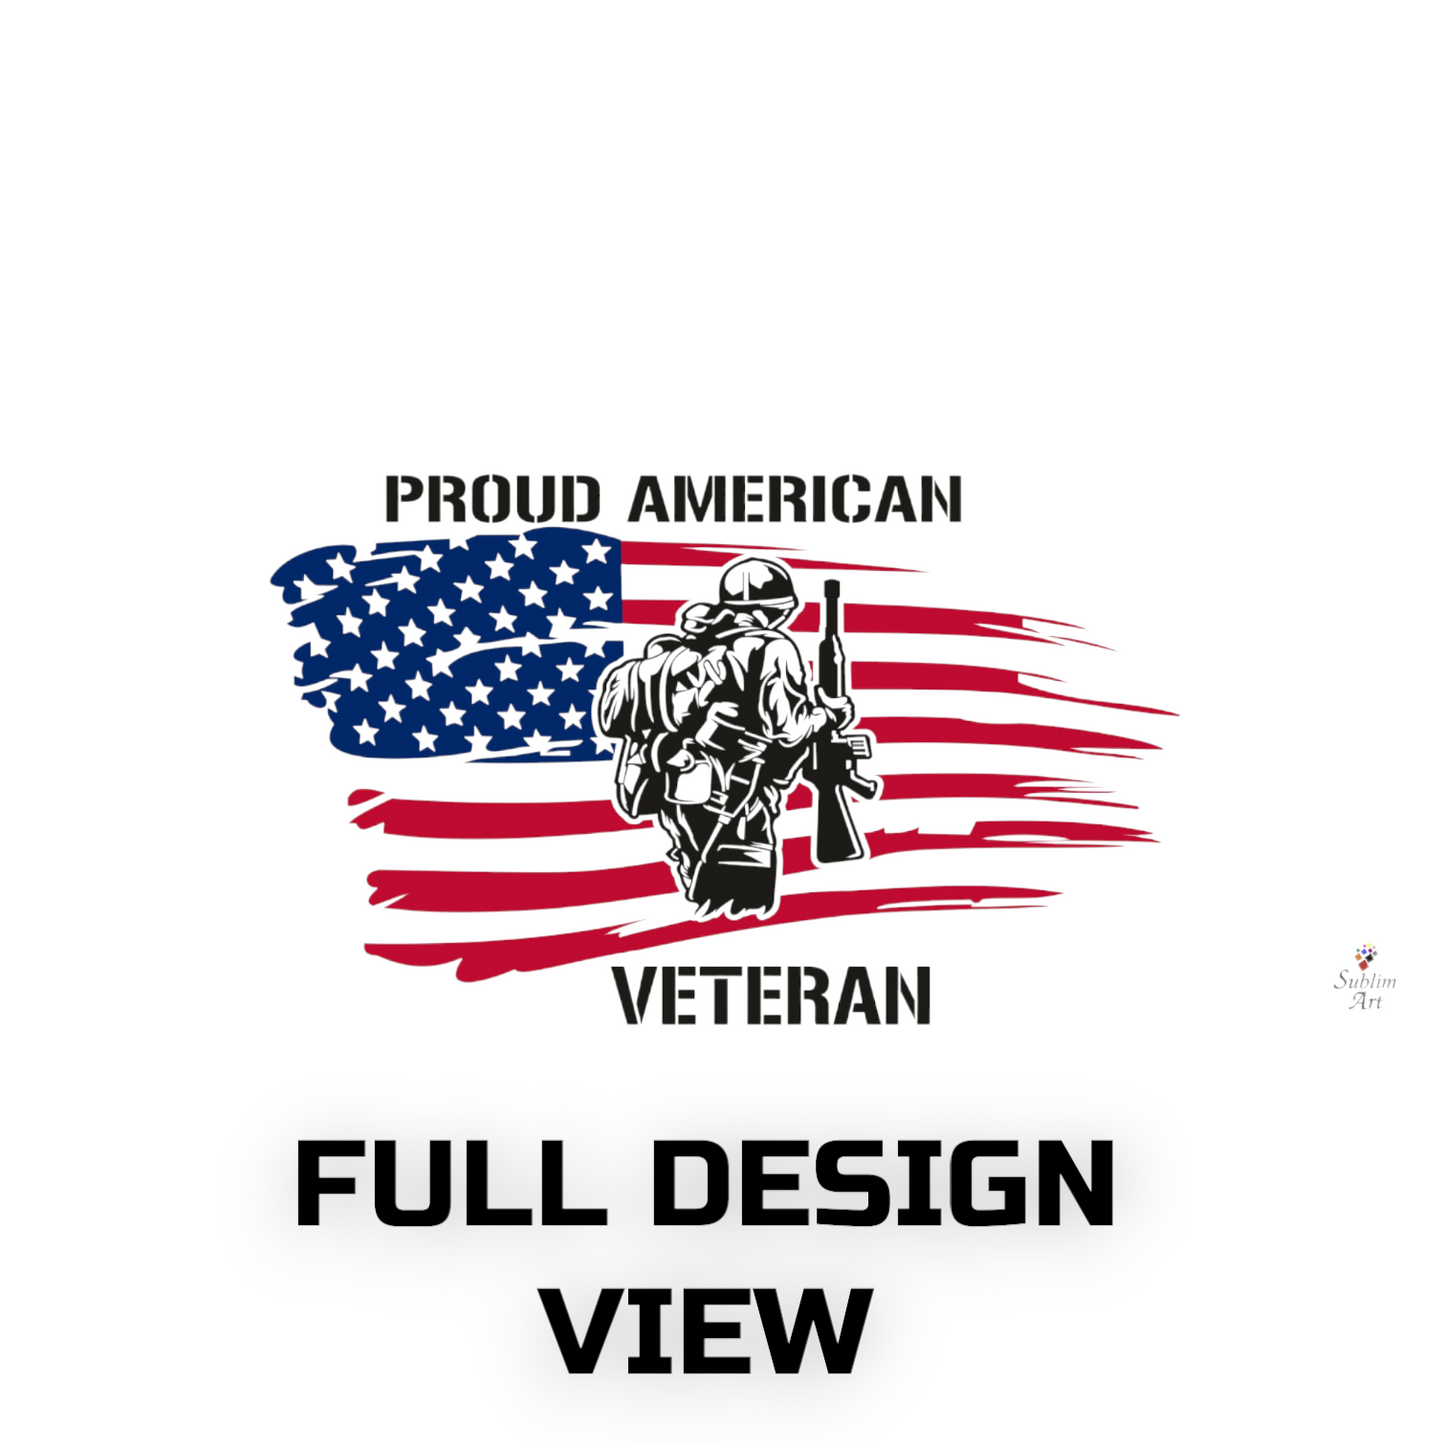 SUBLIMART: Veteran - Mug 'Proud Army Veteran' (Design #21B)